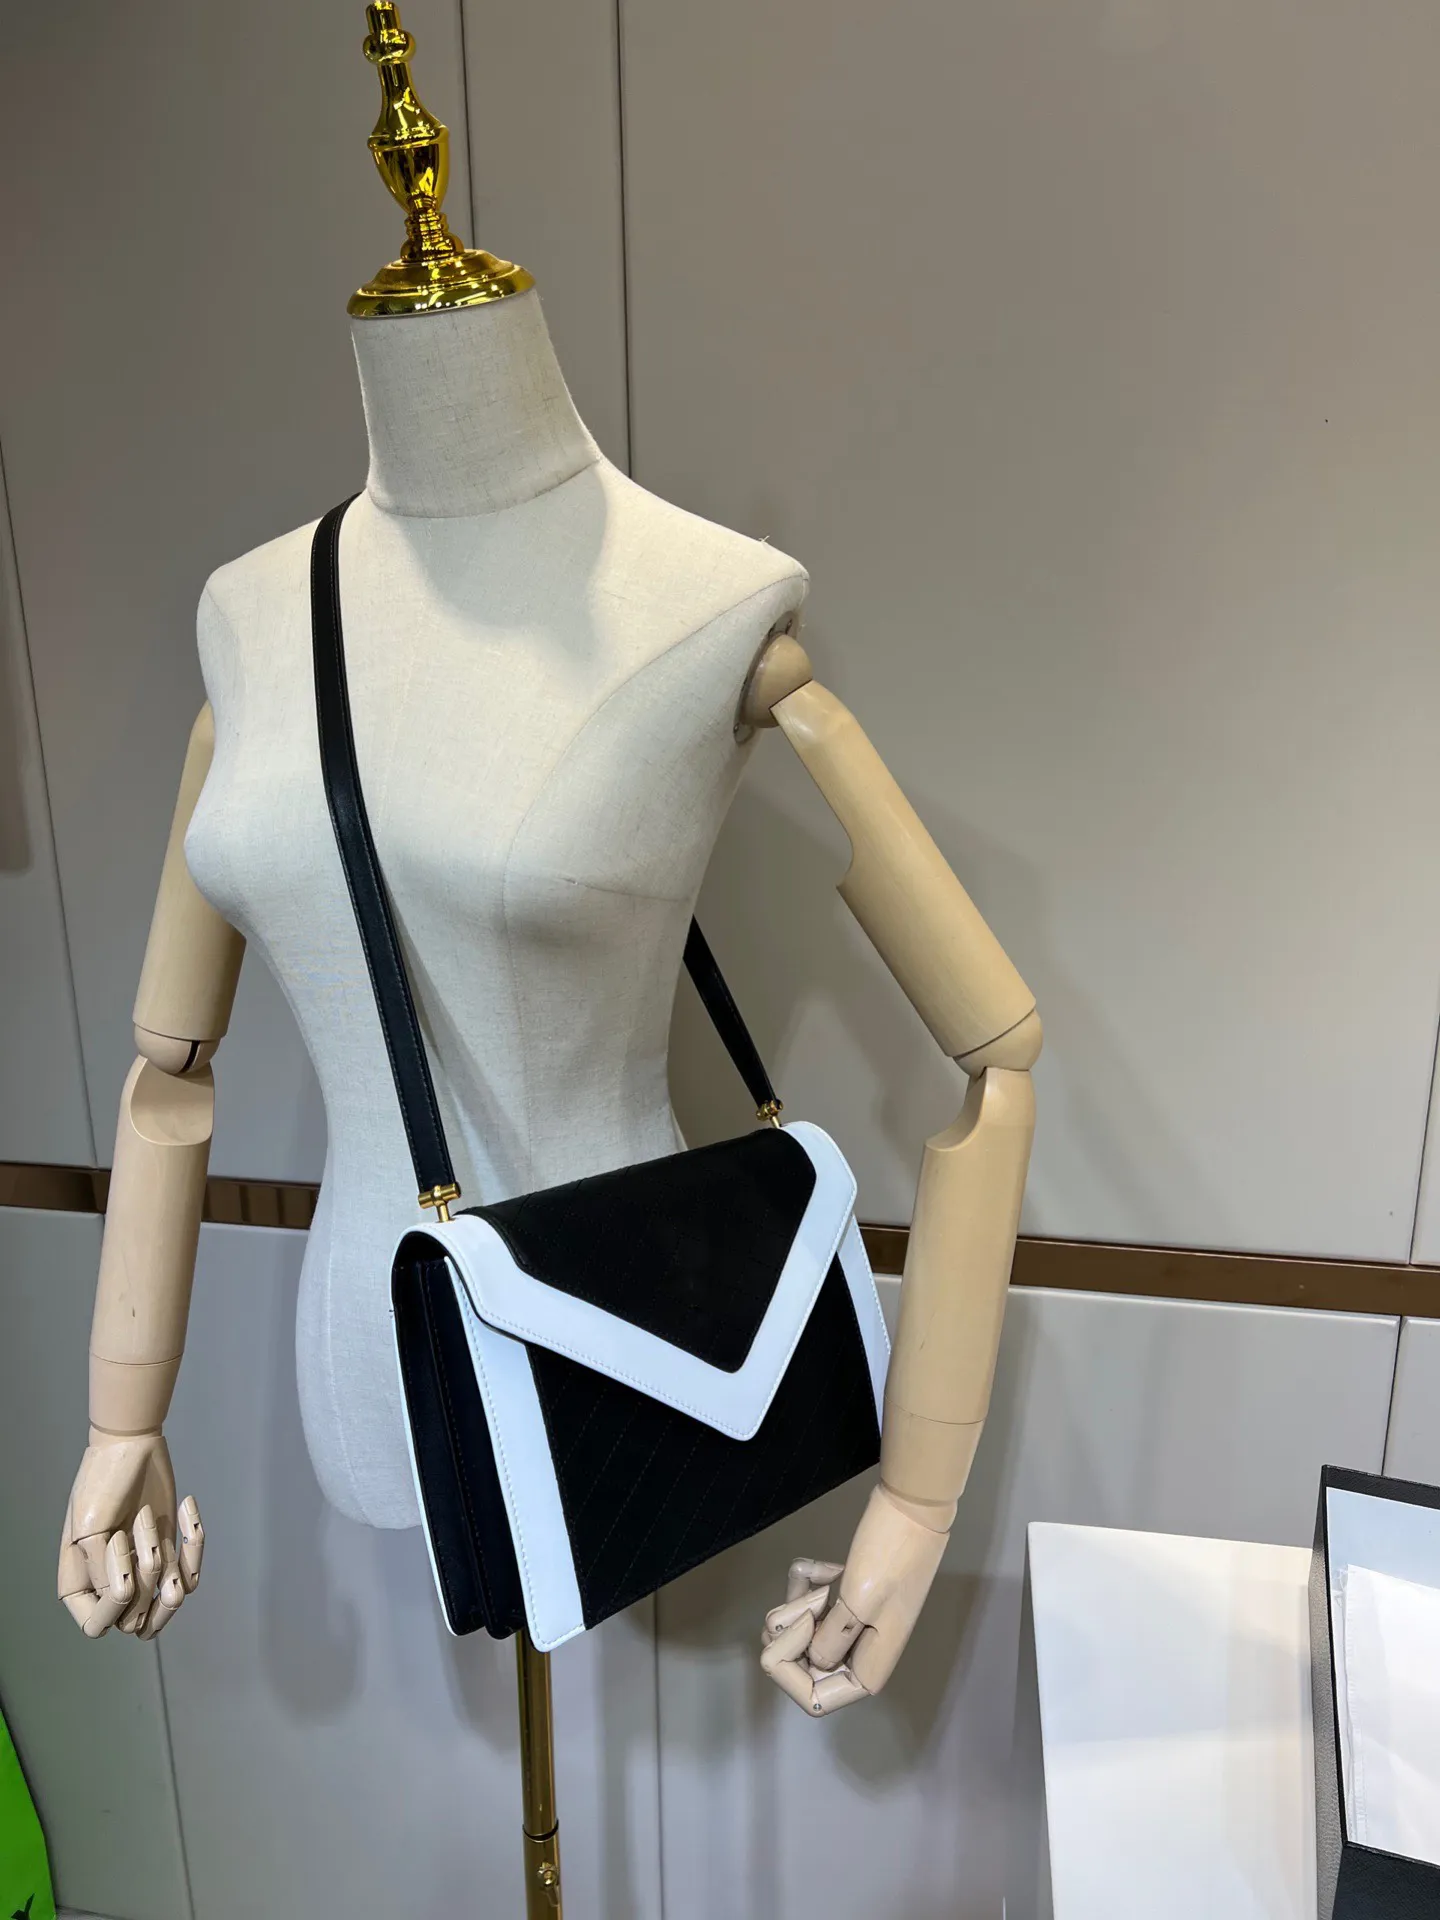 2022 Top Calidad Mujeres Bolsos de diseño de lujo Lady Crossbody Bolsas 1 1 Bolsa de hombro Diseñadores Bolsos de cuero Real Bolsos de rayas Bolsas de sobre negro negro